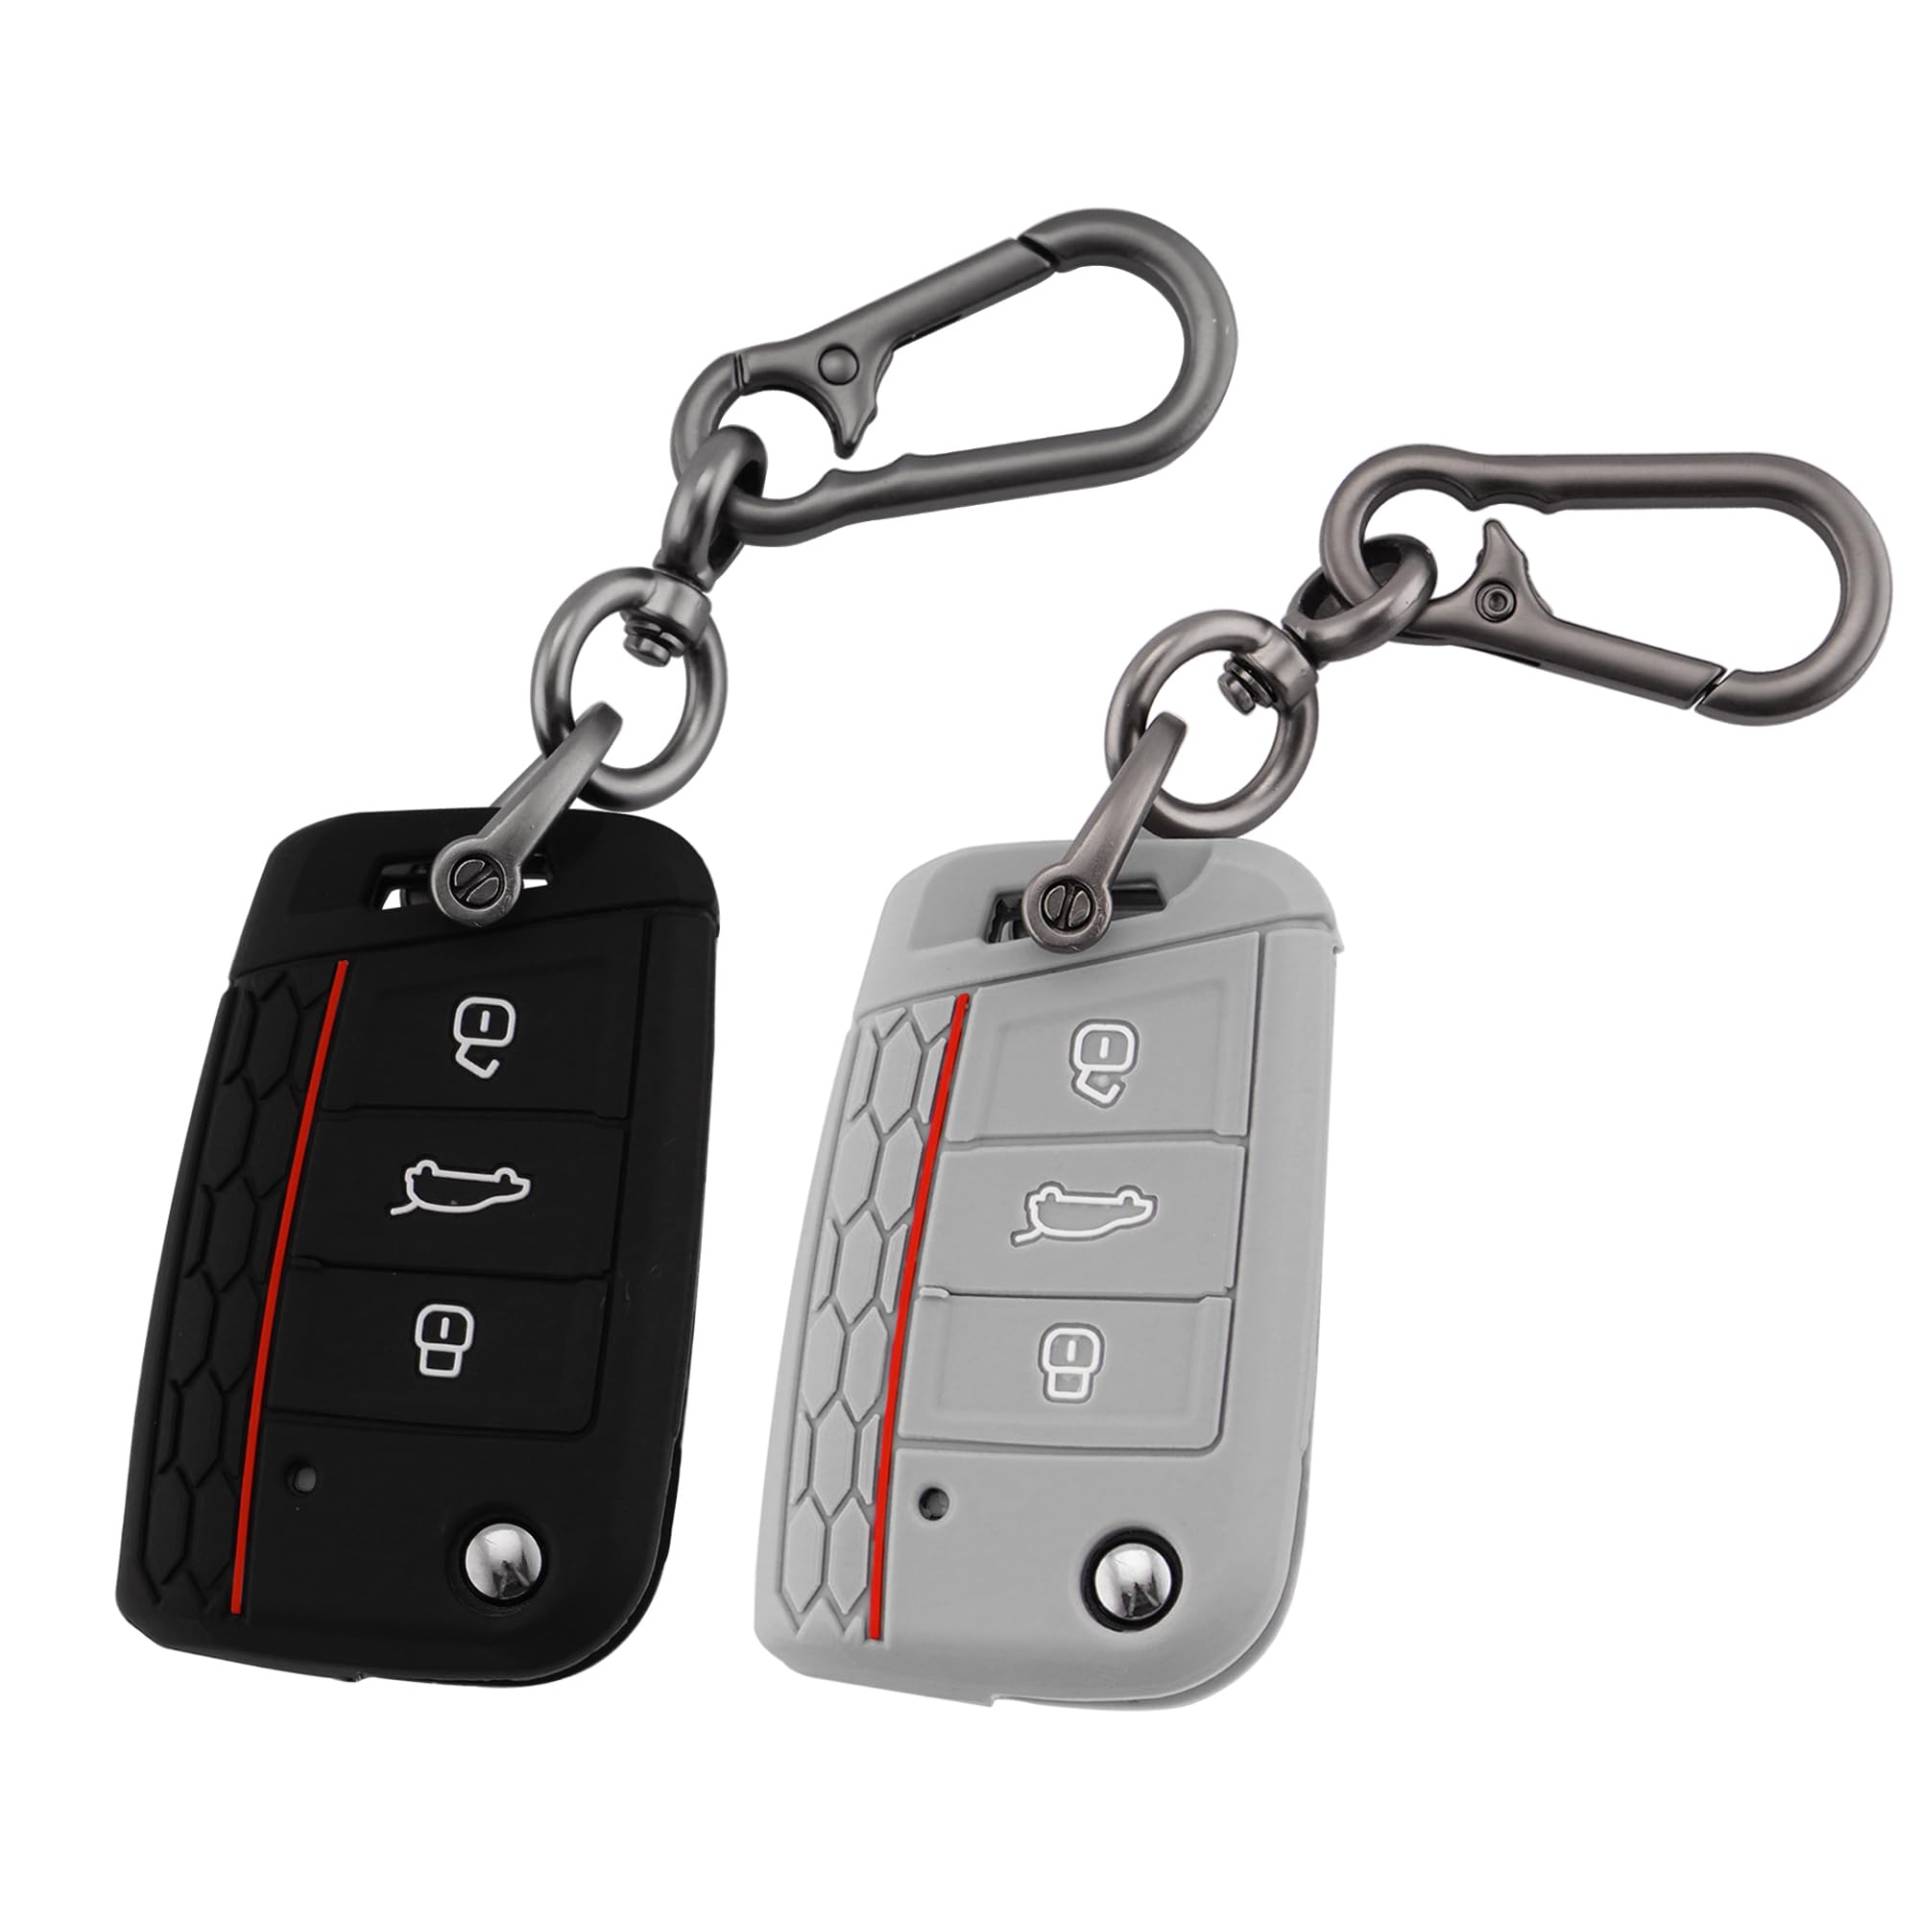 ERMWALR für VW-Schlüsselanhänger-Abdeckung mit Schlüsselanhänger, 3 Tasten, Silikon-Schlüsselgehäuse, passend für Volkswagen Golf 7 Polo MK6 Jetta Tiguan Skoda Seat Leon Ibiza, 2 Stück (Vlw-3B-BG) von ERMWALR